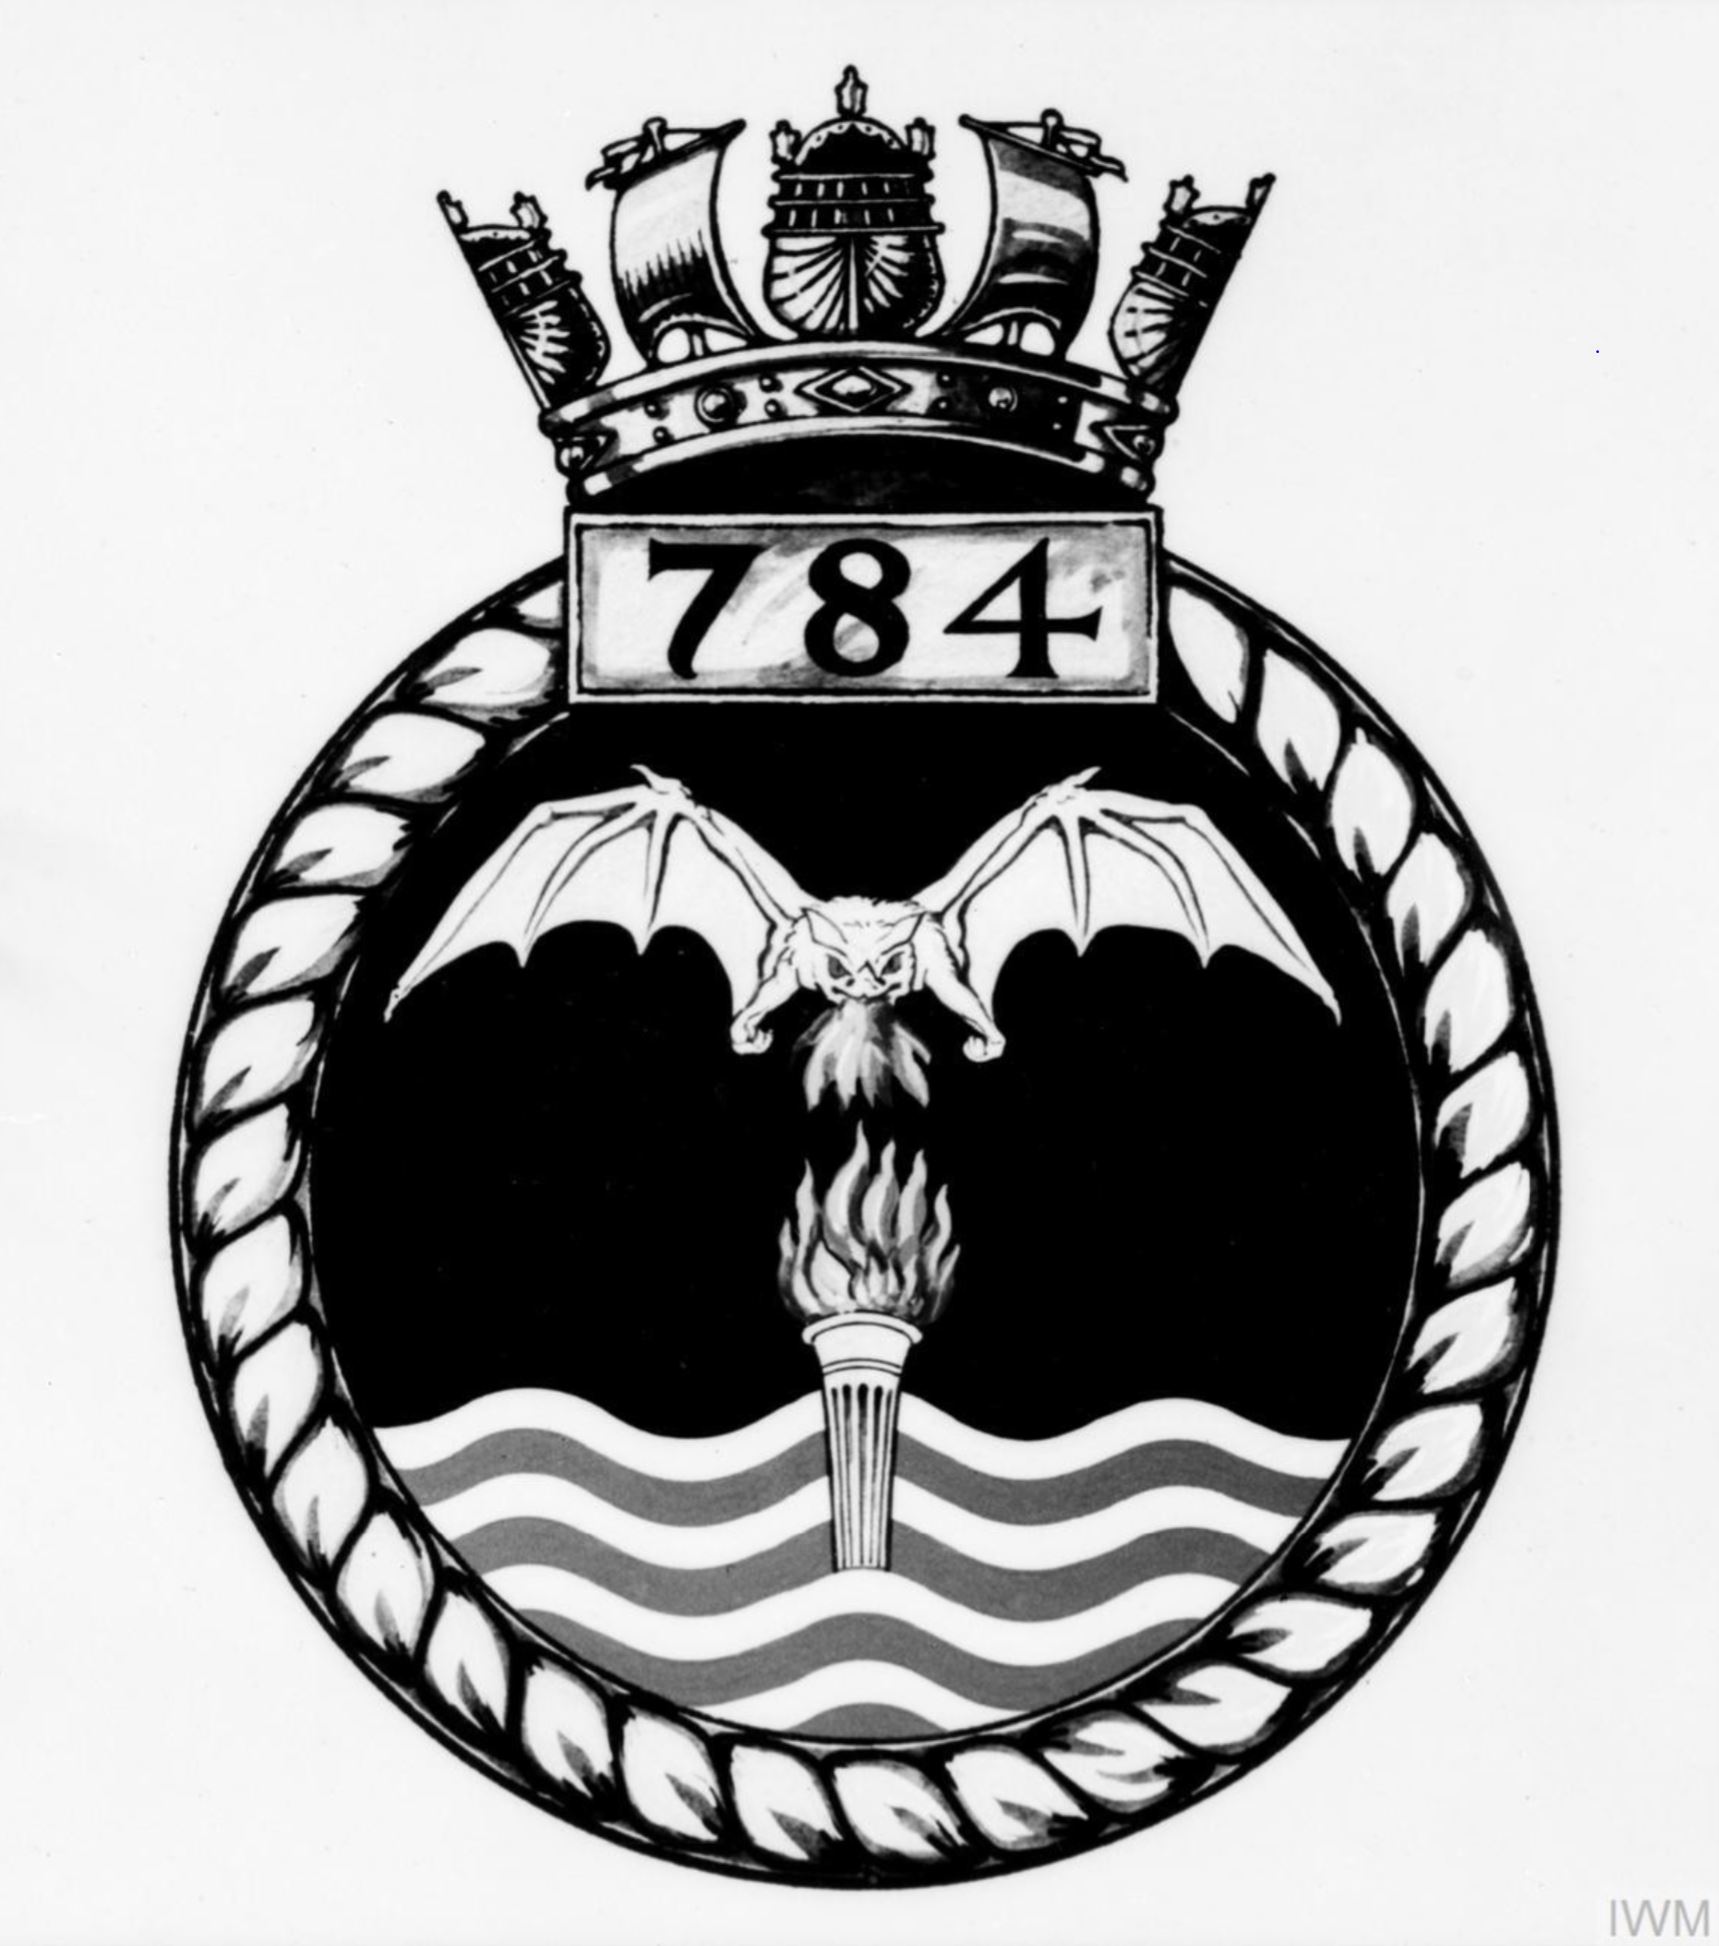 Fleet Air Arm crest of 784 Squadron IWM A26768